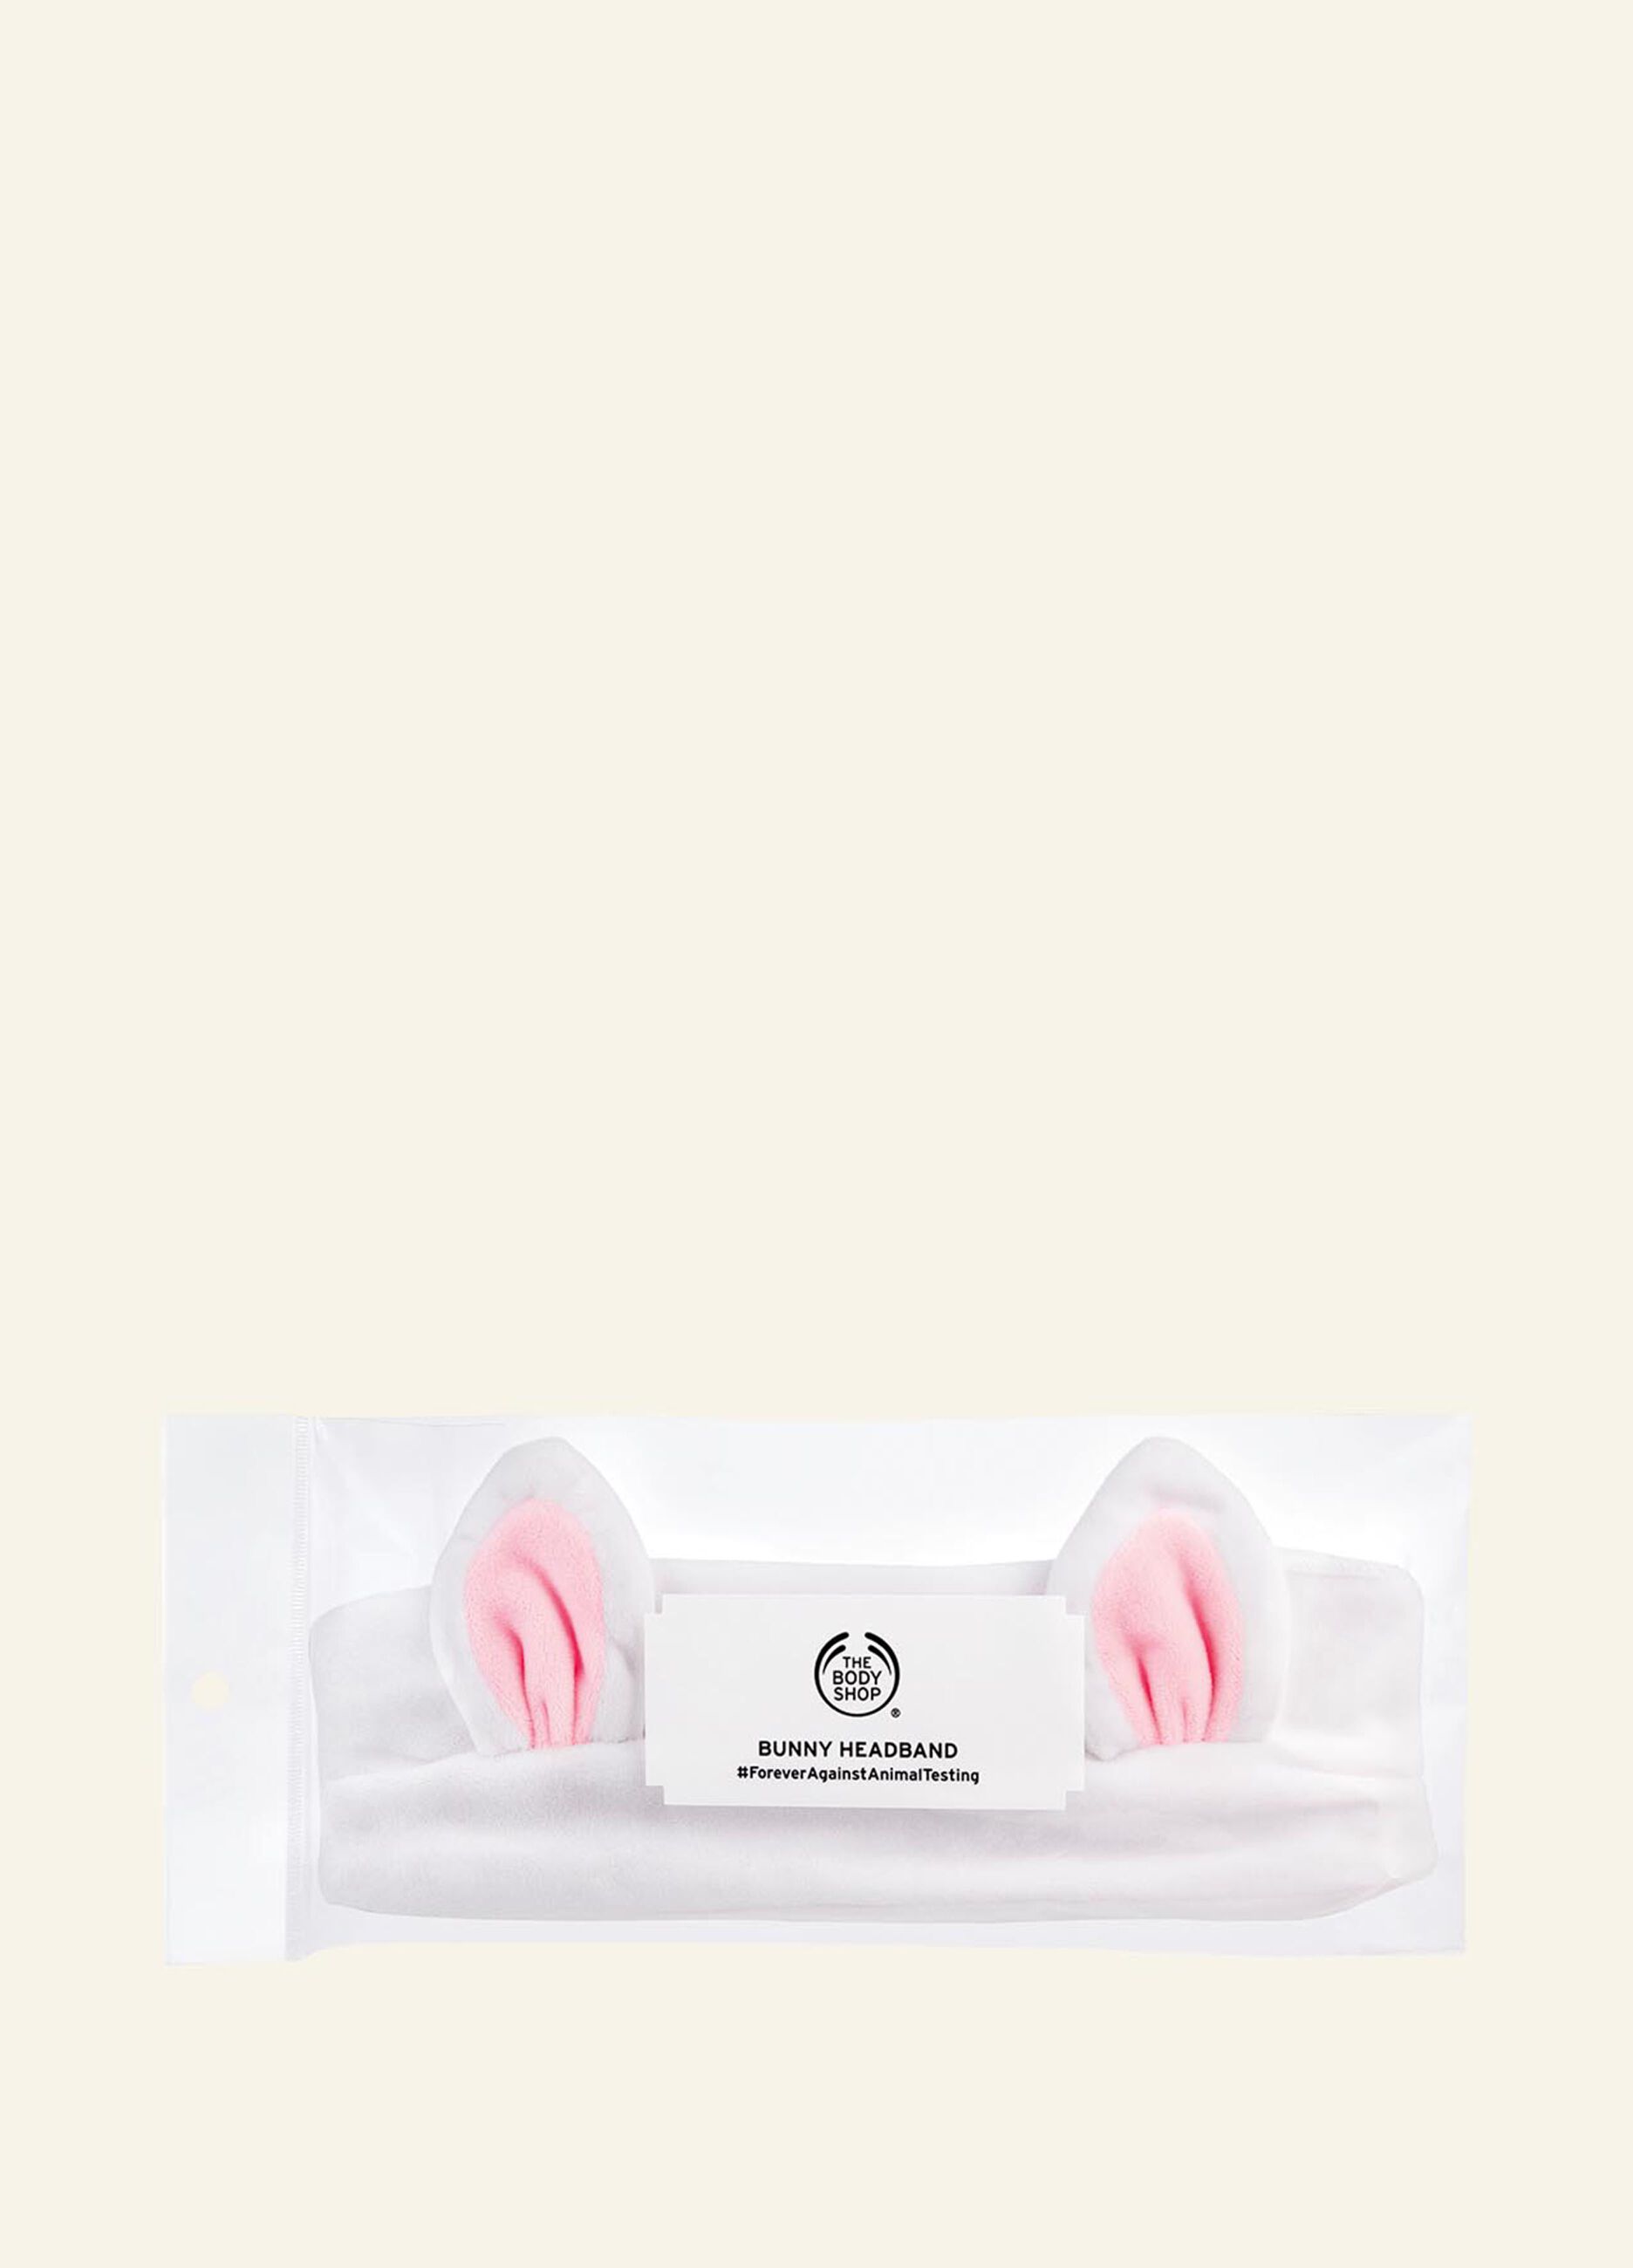 The Body Shop bunny headband